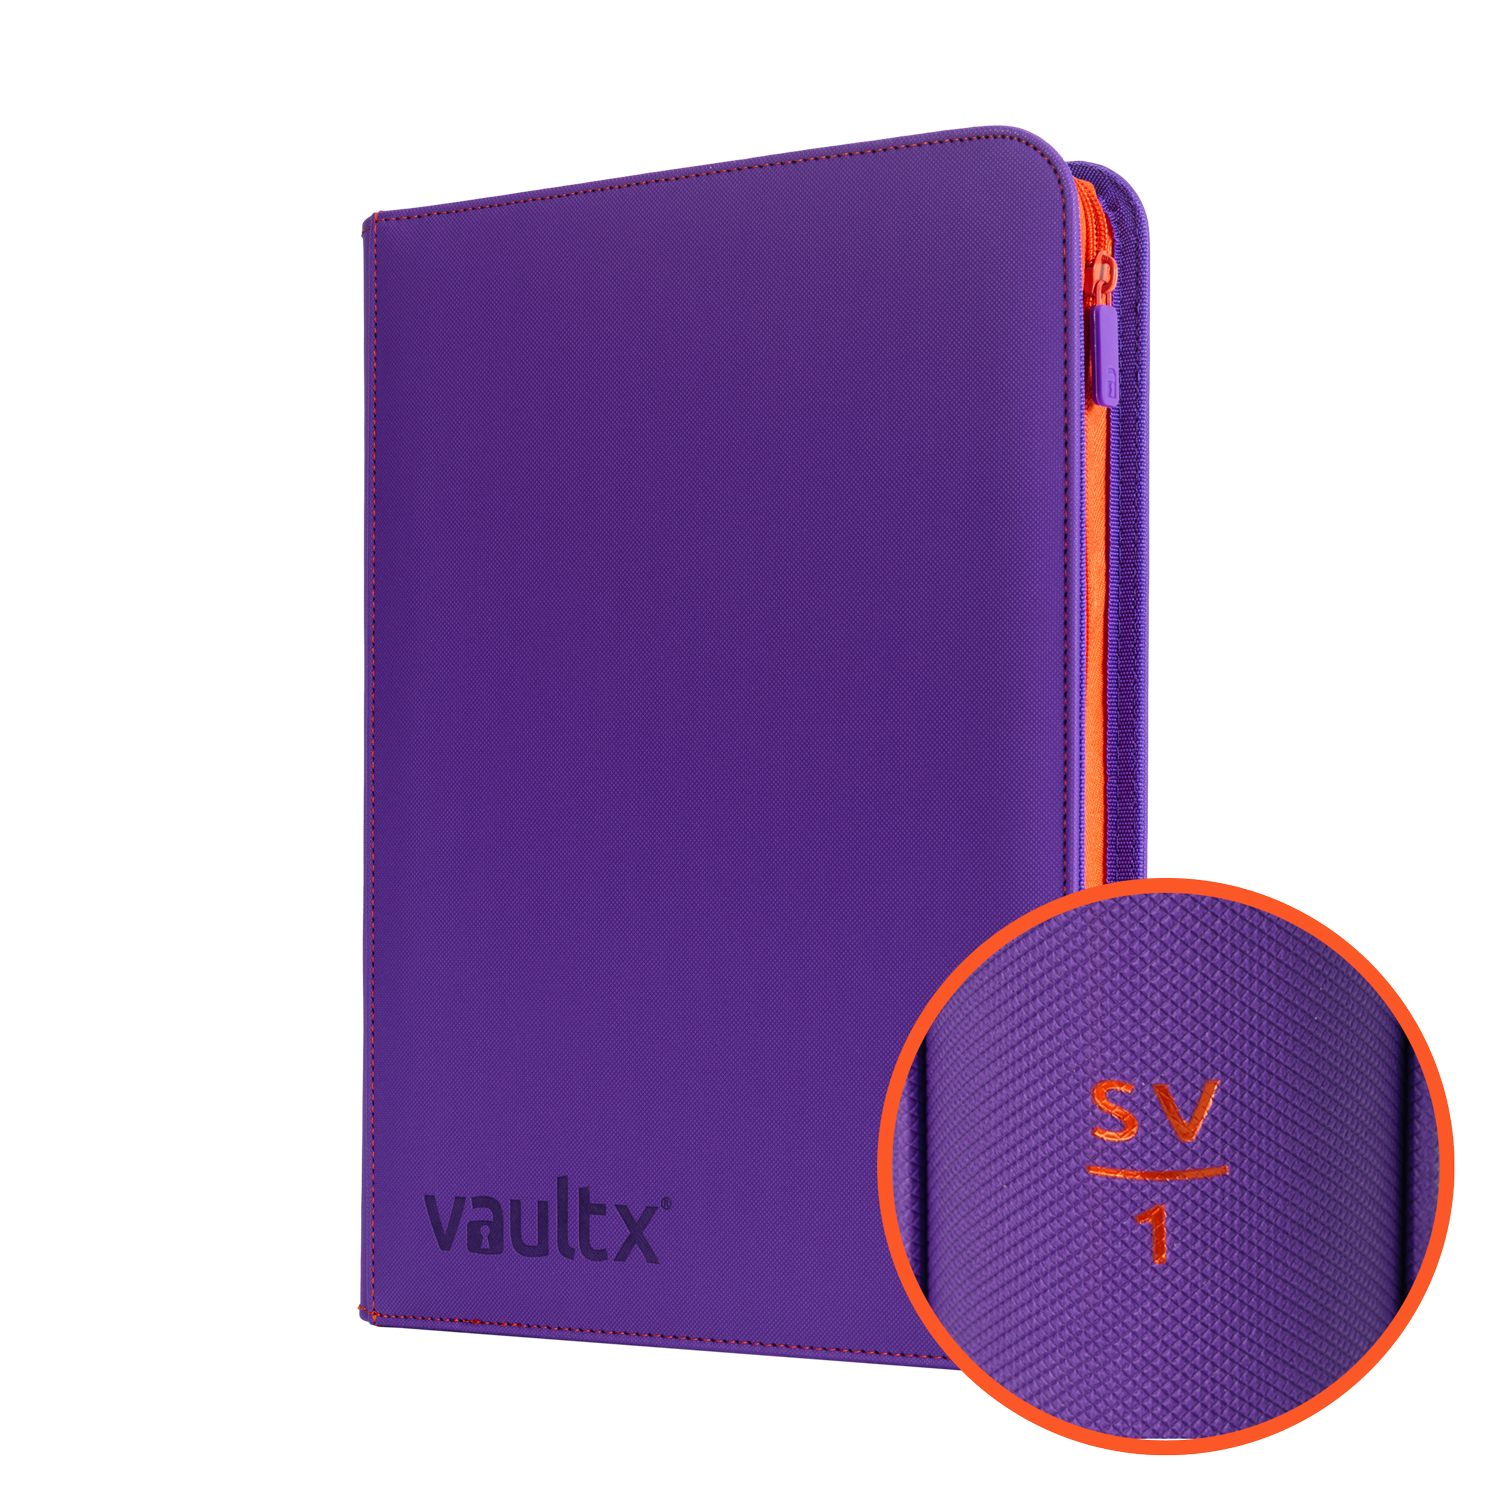 A premium binder worthy of your cards? - Vault X Exo-tec Zip Binder Review  